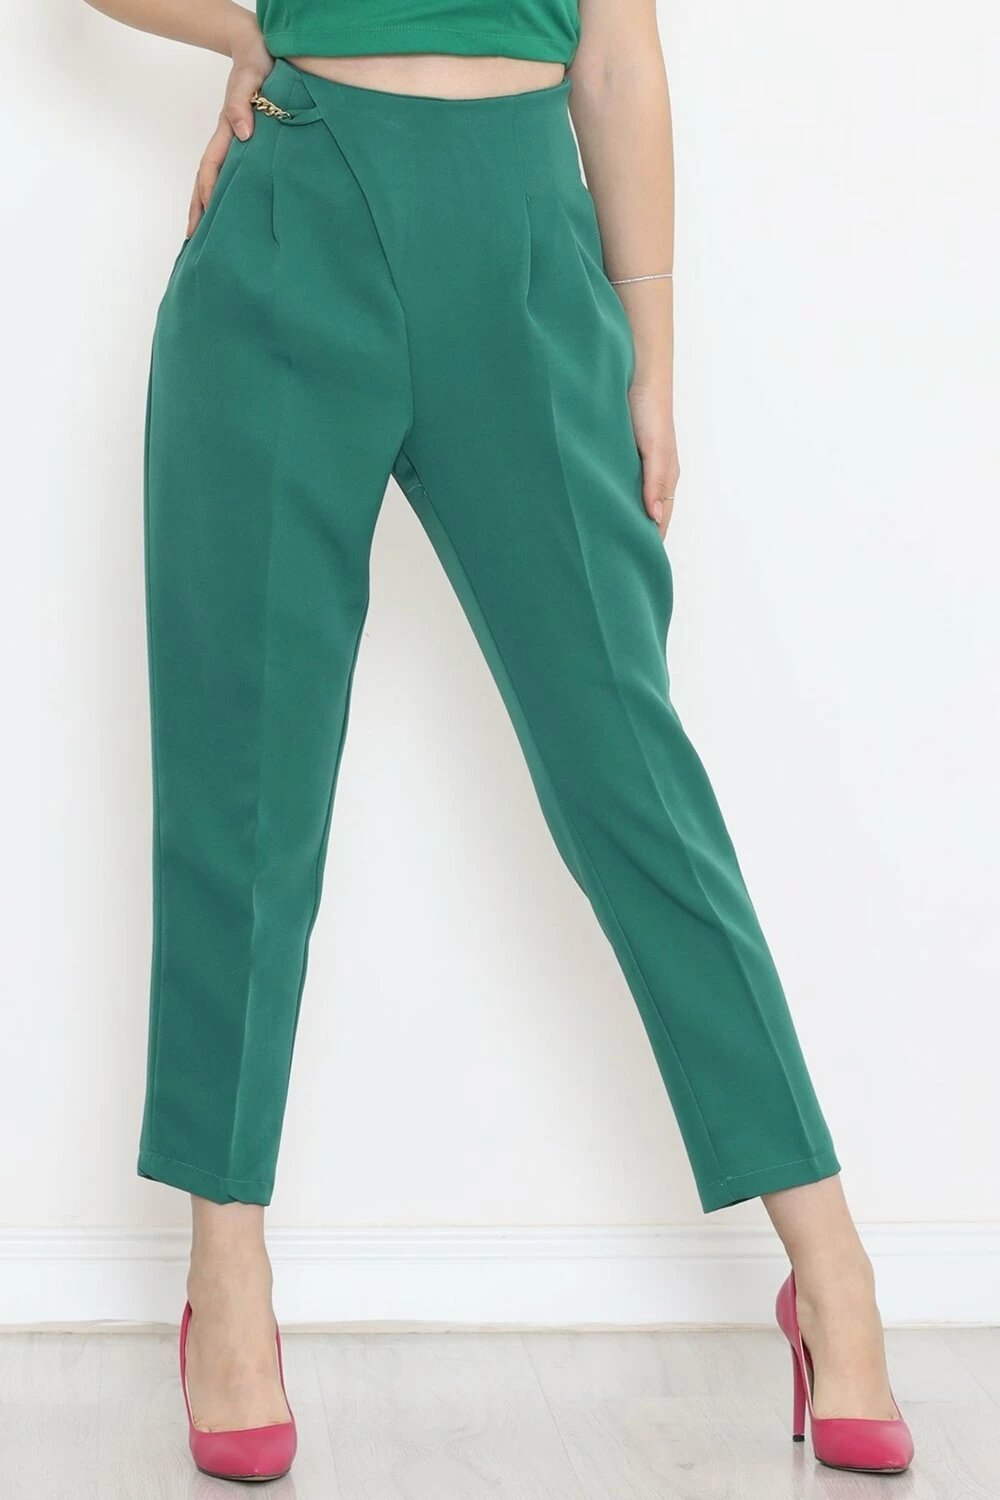 Pantallona Hd Giyim, femra, të gjelbra